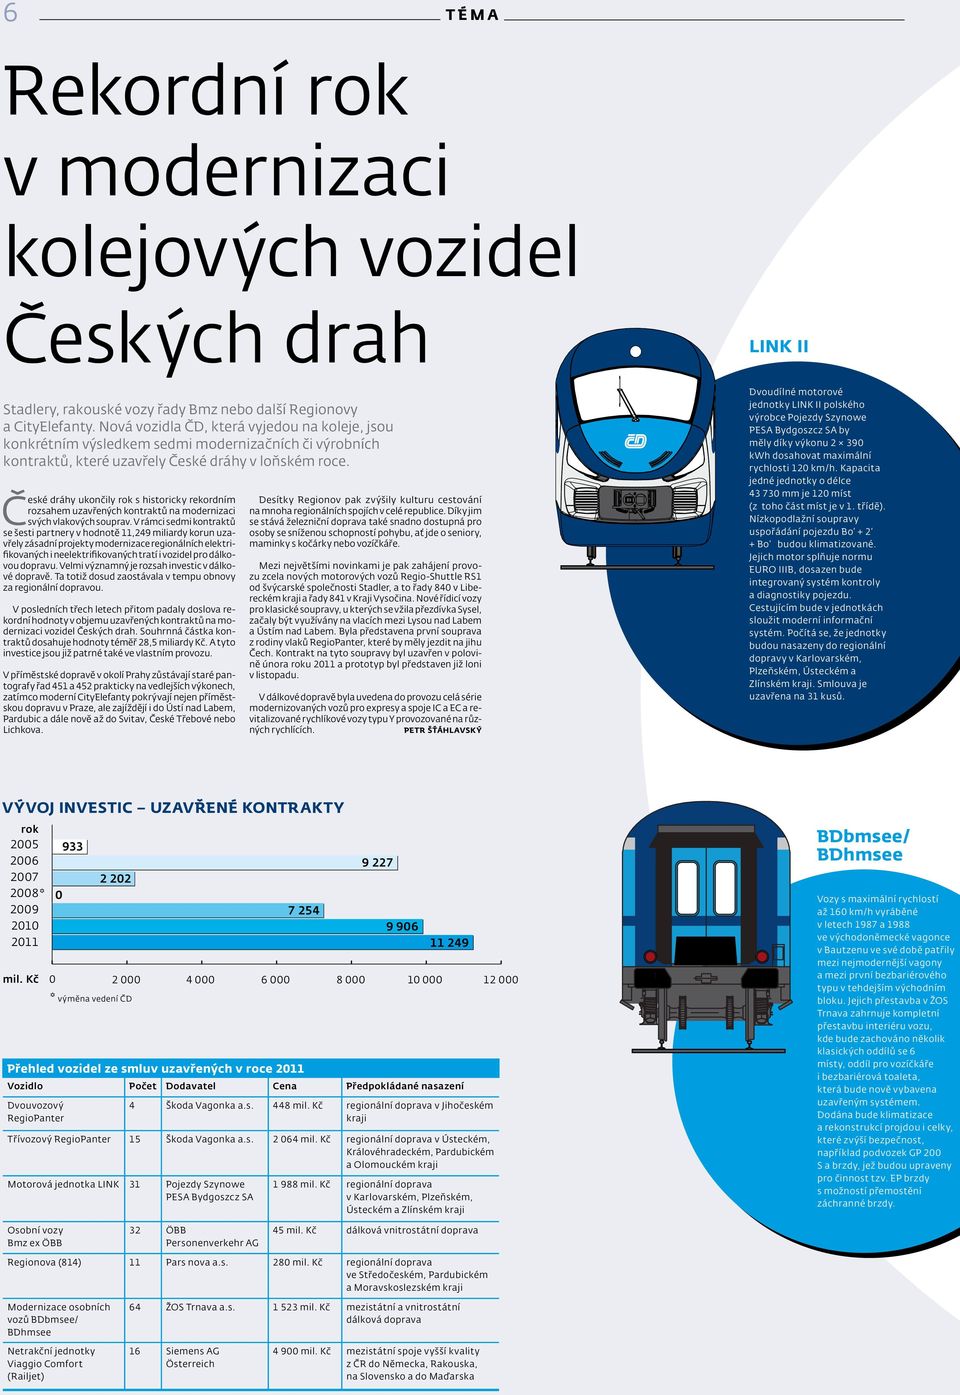 Č eské dráhy ukončily rok s historicky rekordním rozsahem uzavřených kontraktů na modernizaci svých vlakových souprav.